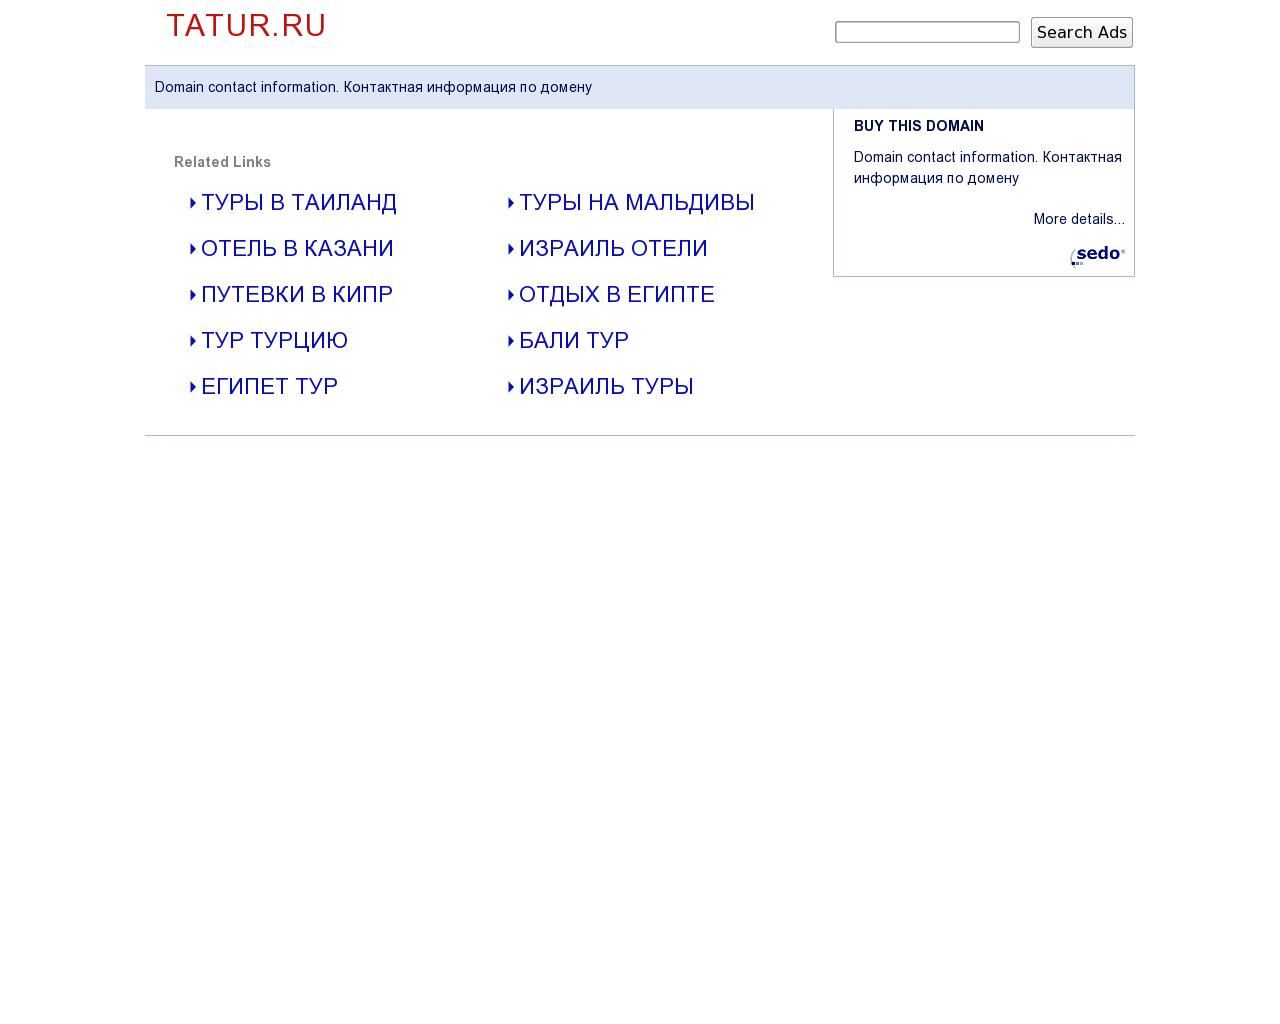 Изображение сайта tatur.ru в разрешении 1280x1024